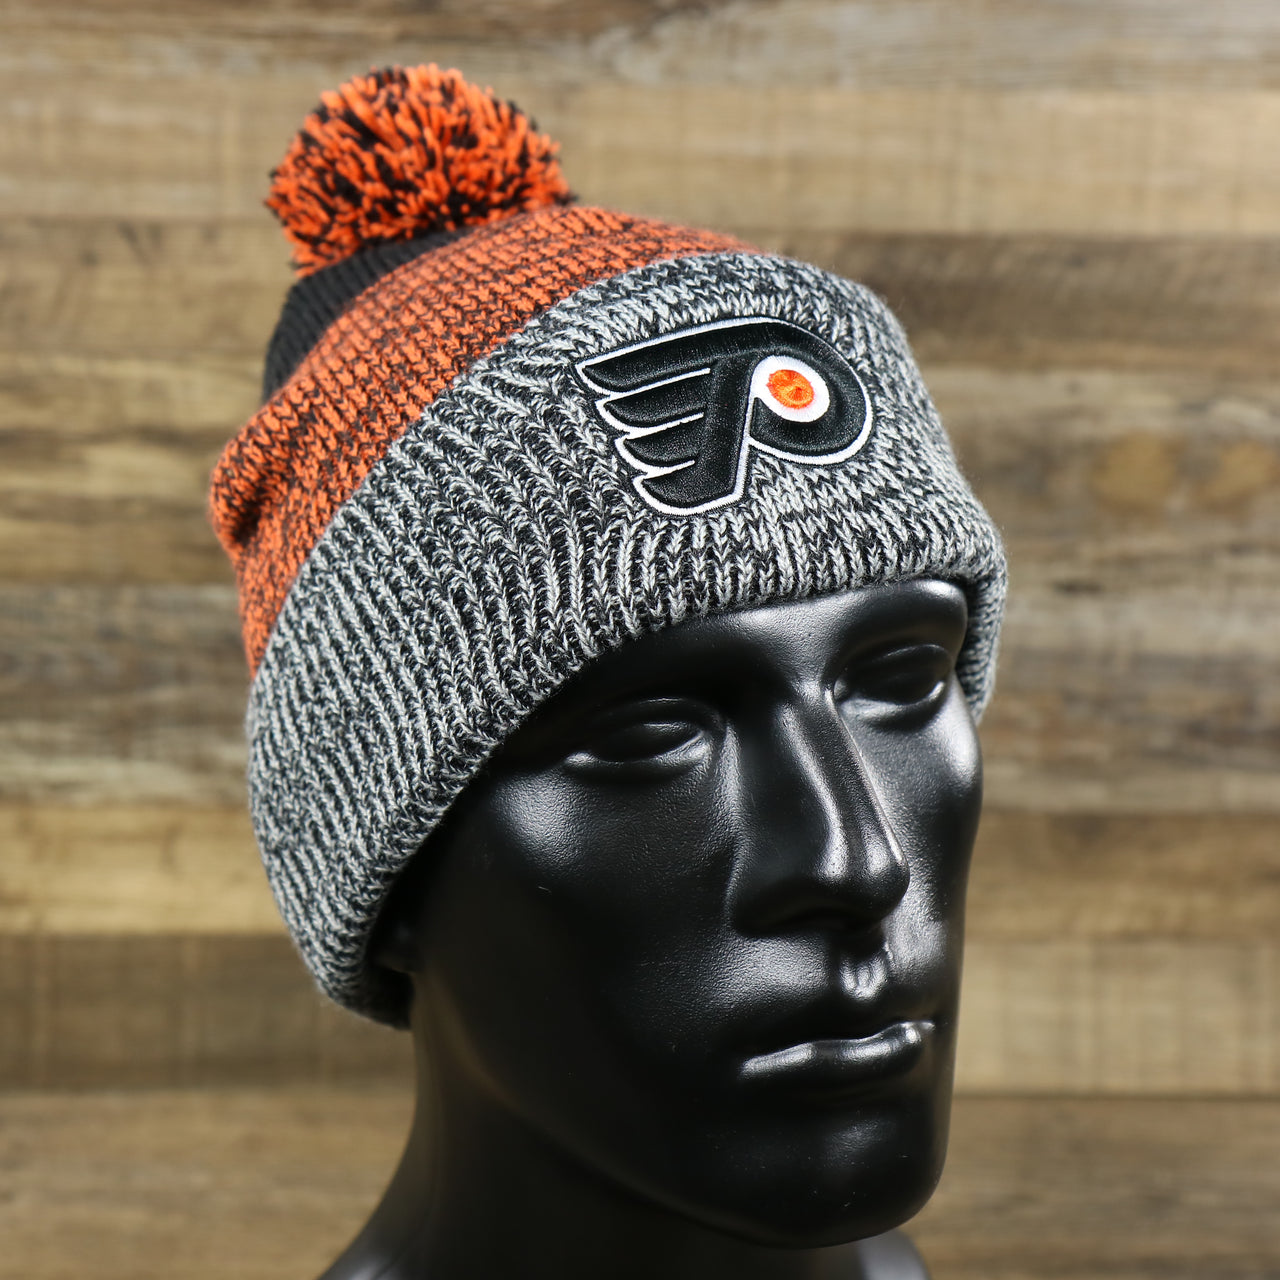 The Philadelphia Flyers Static Knit Cuffed Winter Beanie With Pom Pom | Black, Orange, And Gray Beanie